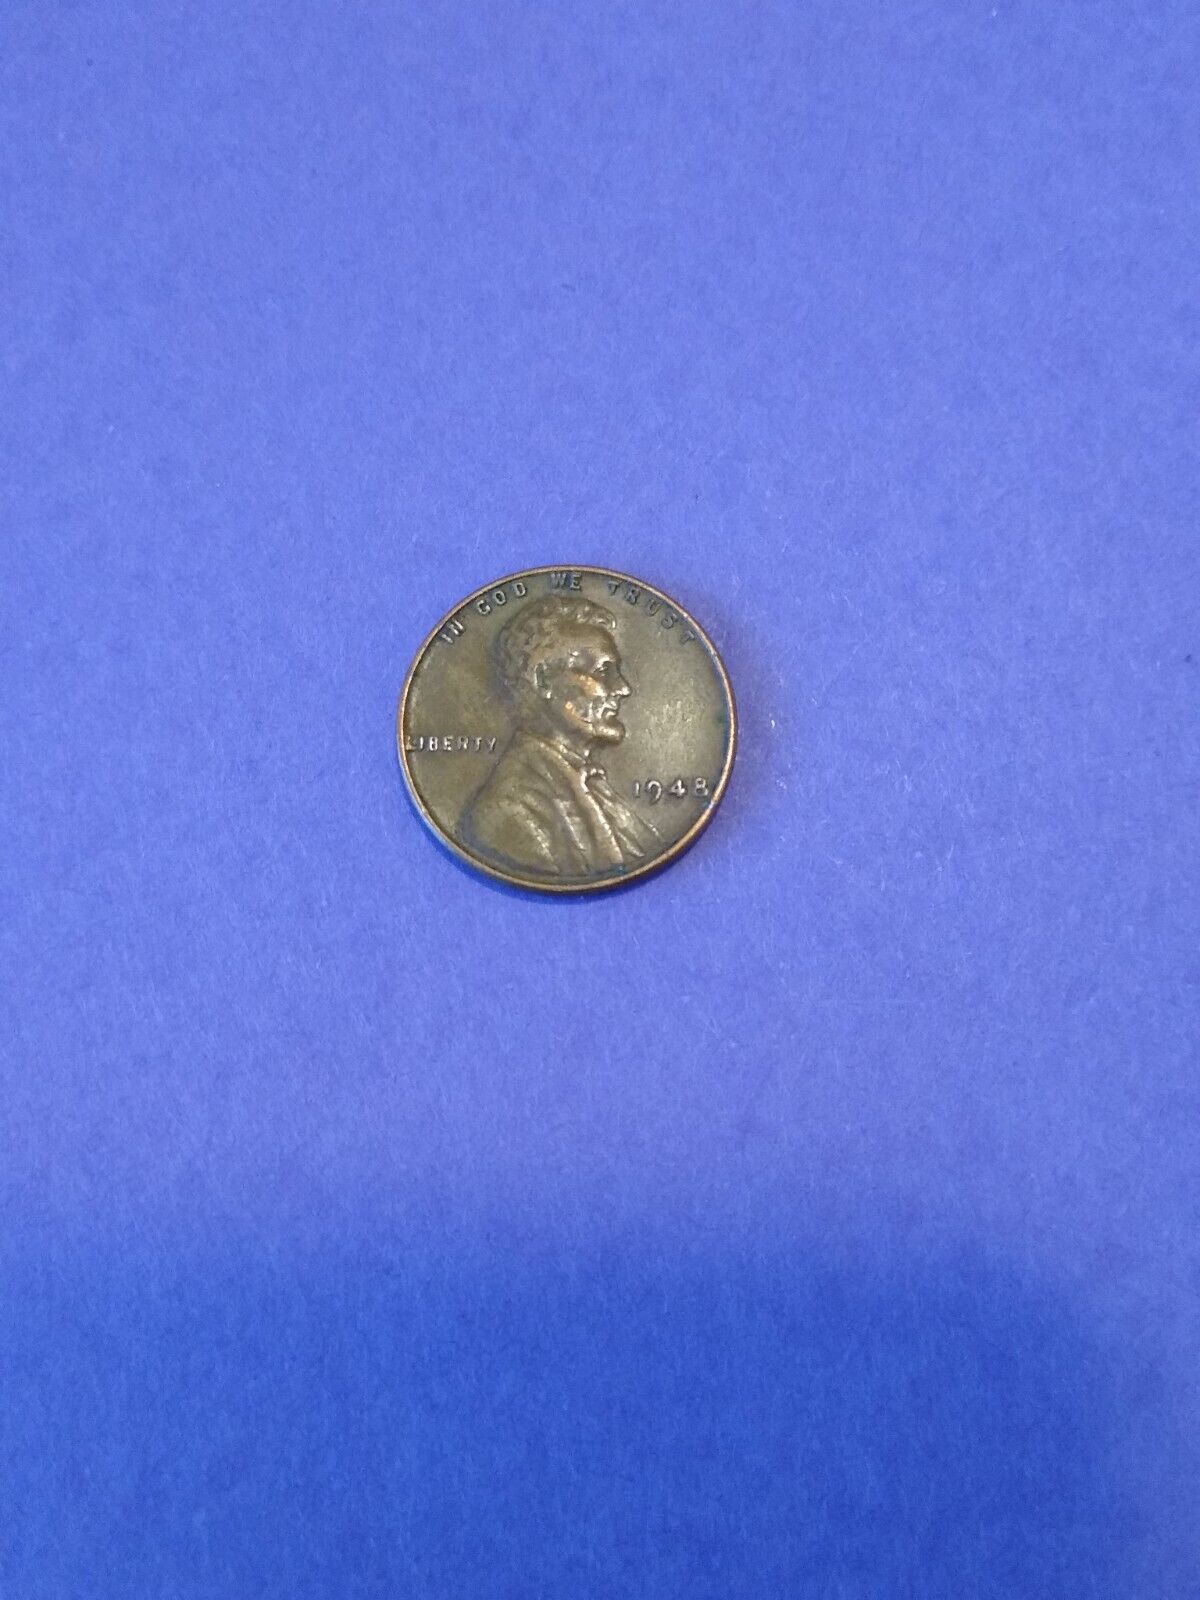 1948 Lincoln penny. no mint mark. L in rim. RV toning error. Rare. 4805